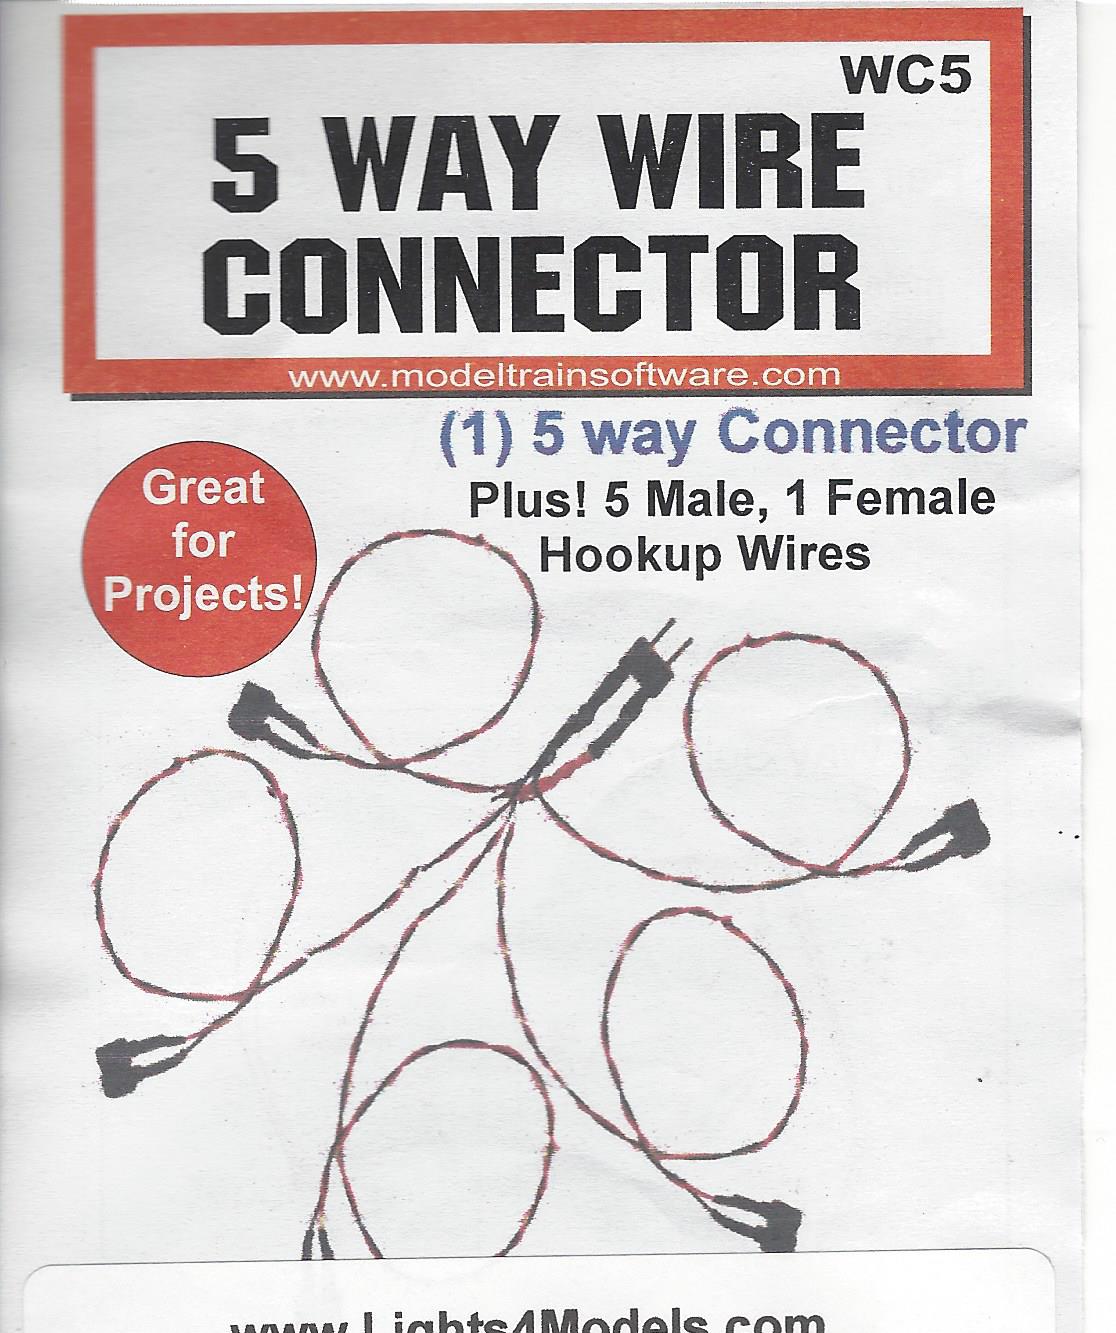 WC 5 way wire connector by Evan Designs